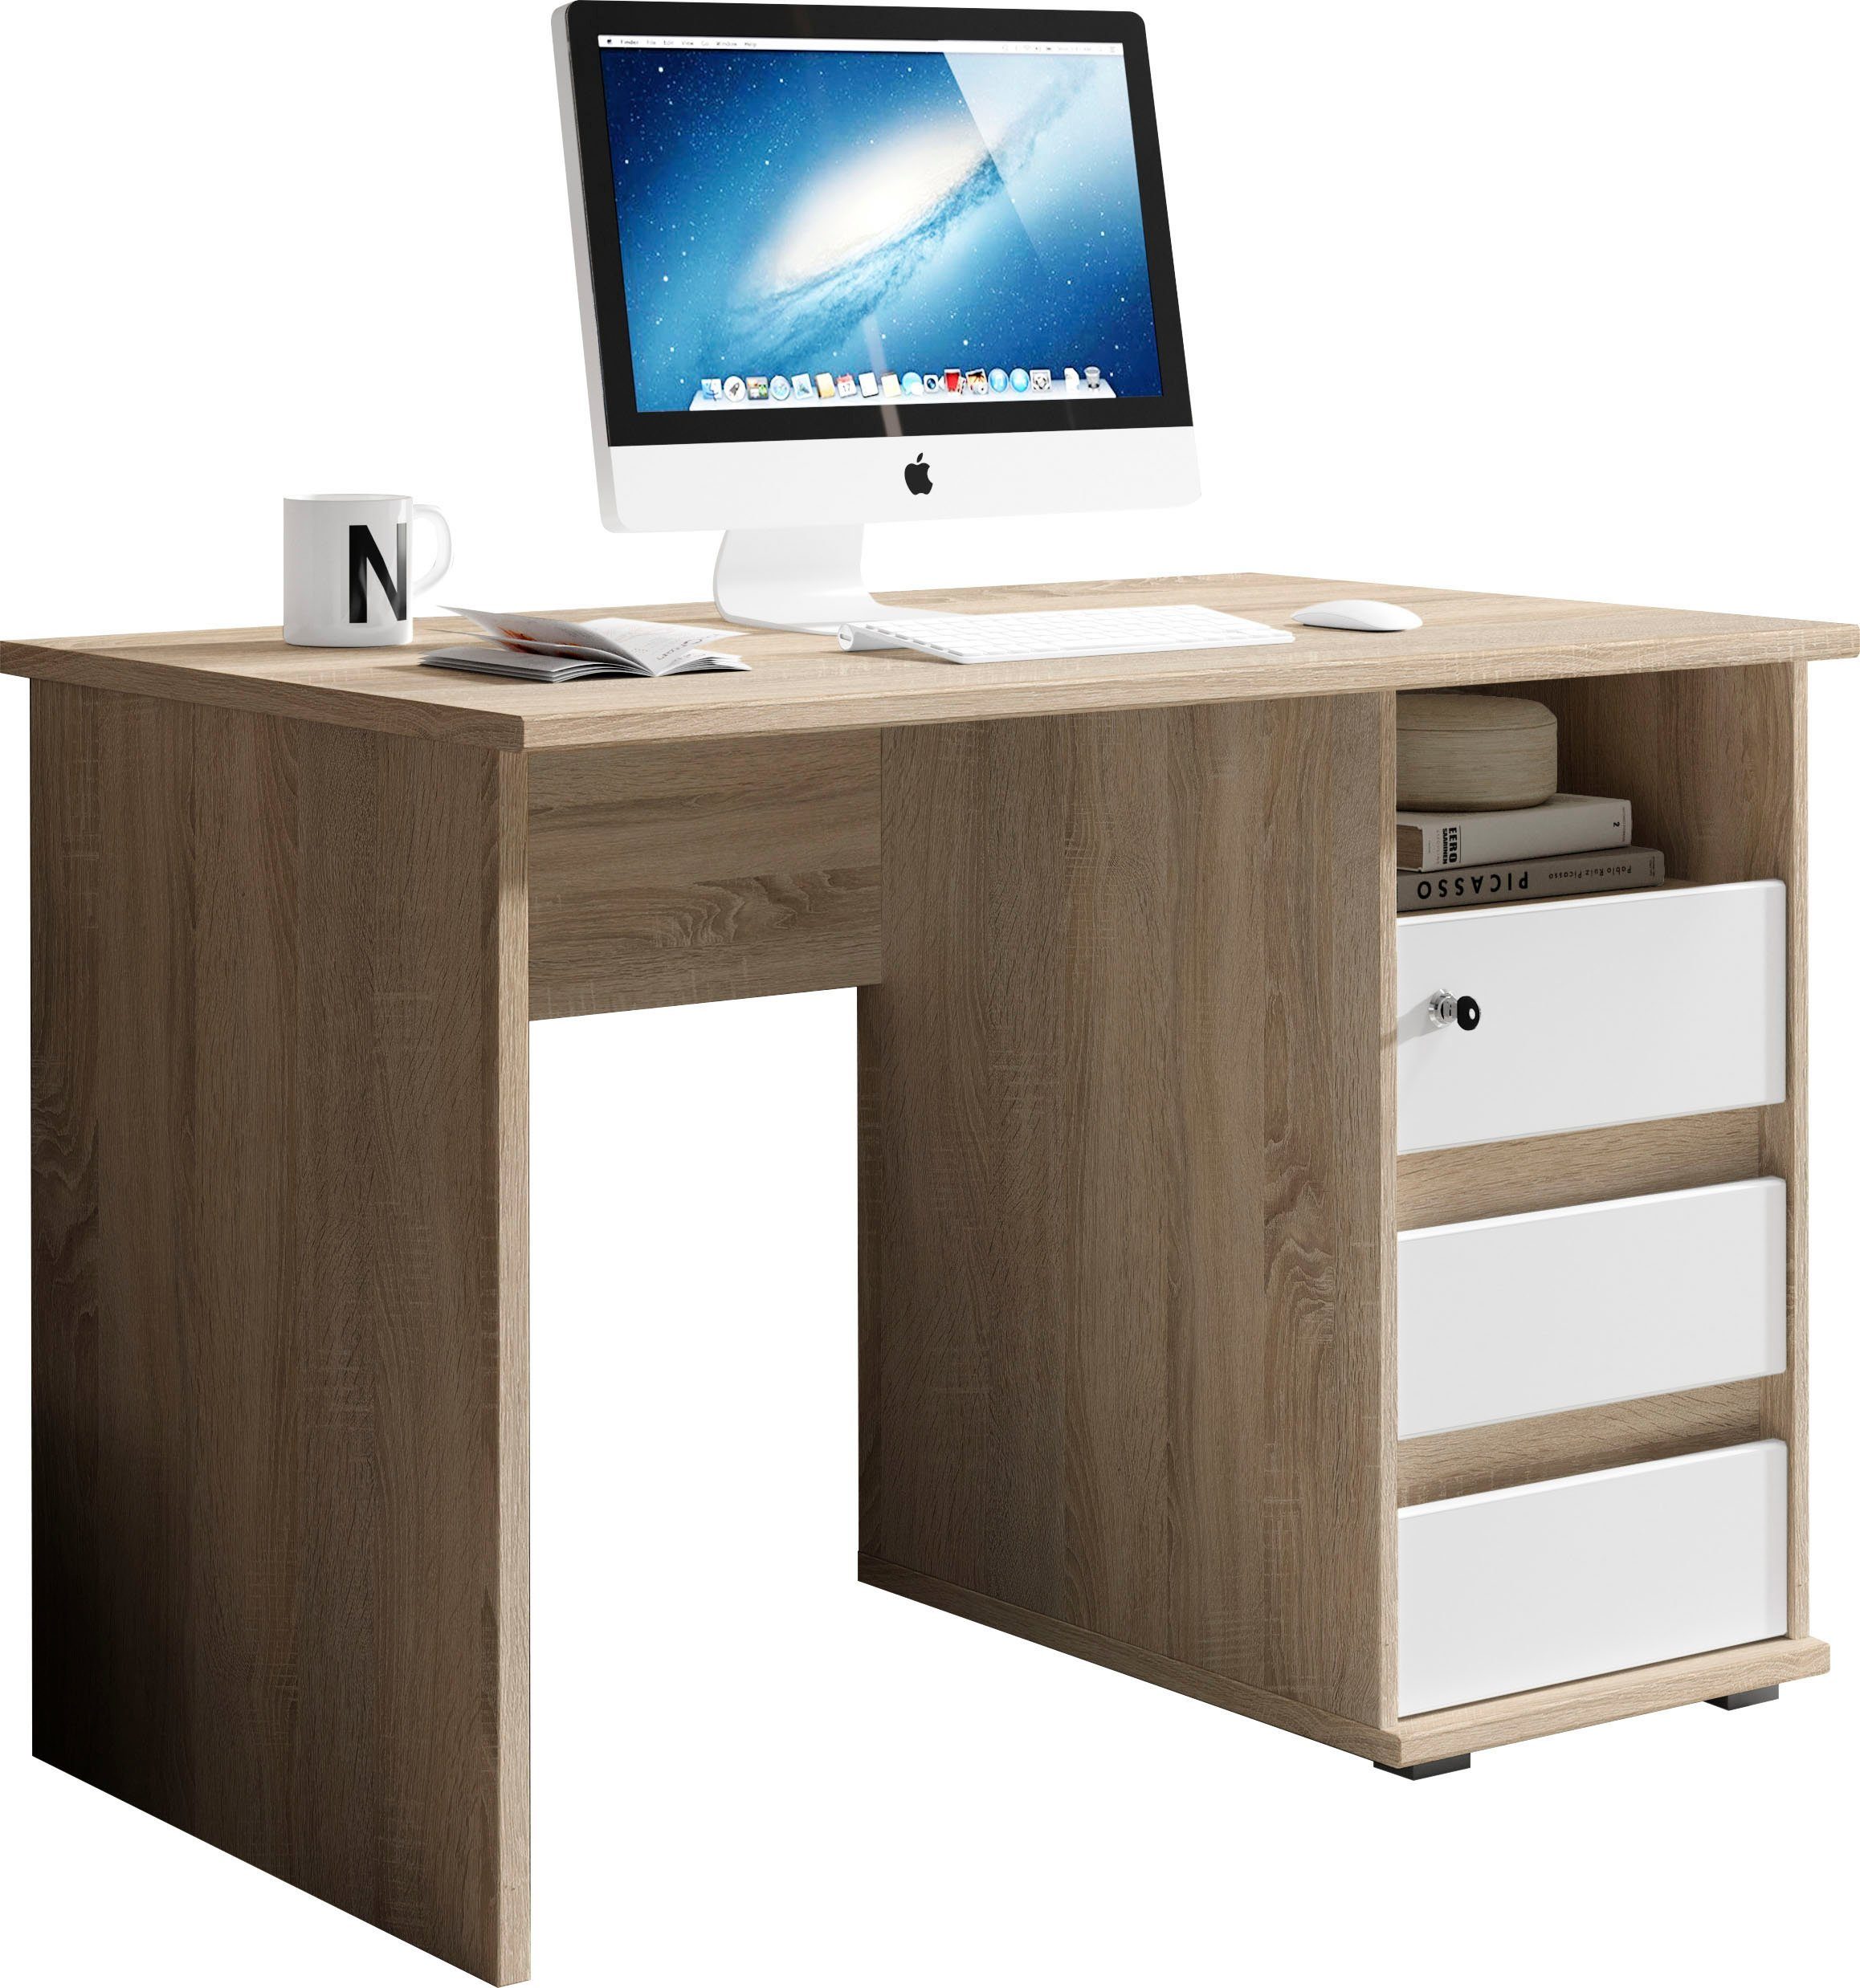 BEGA OFFICE Schreibtisch in sonoma/weiß Schubkasten abschließbar Primus eiche 3 Farbausführungen mit 1